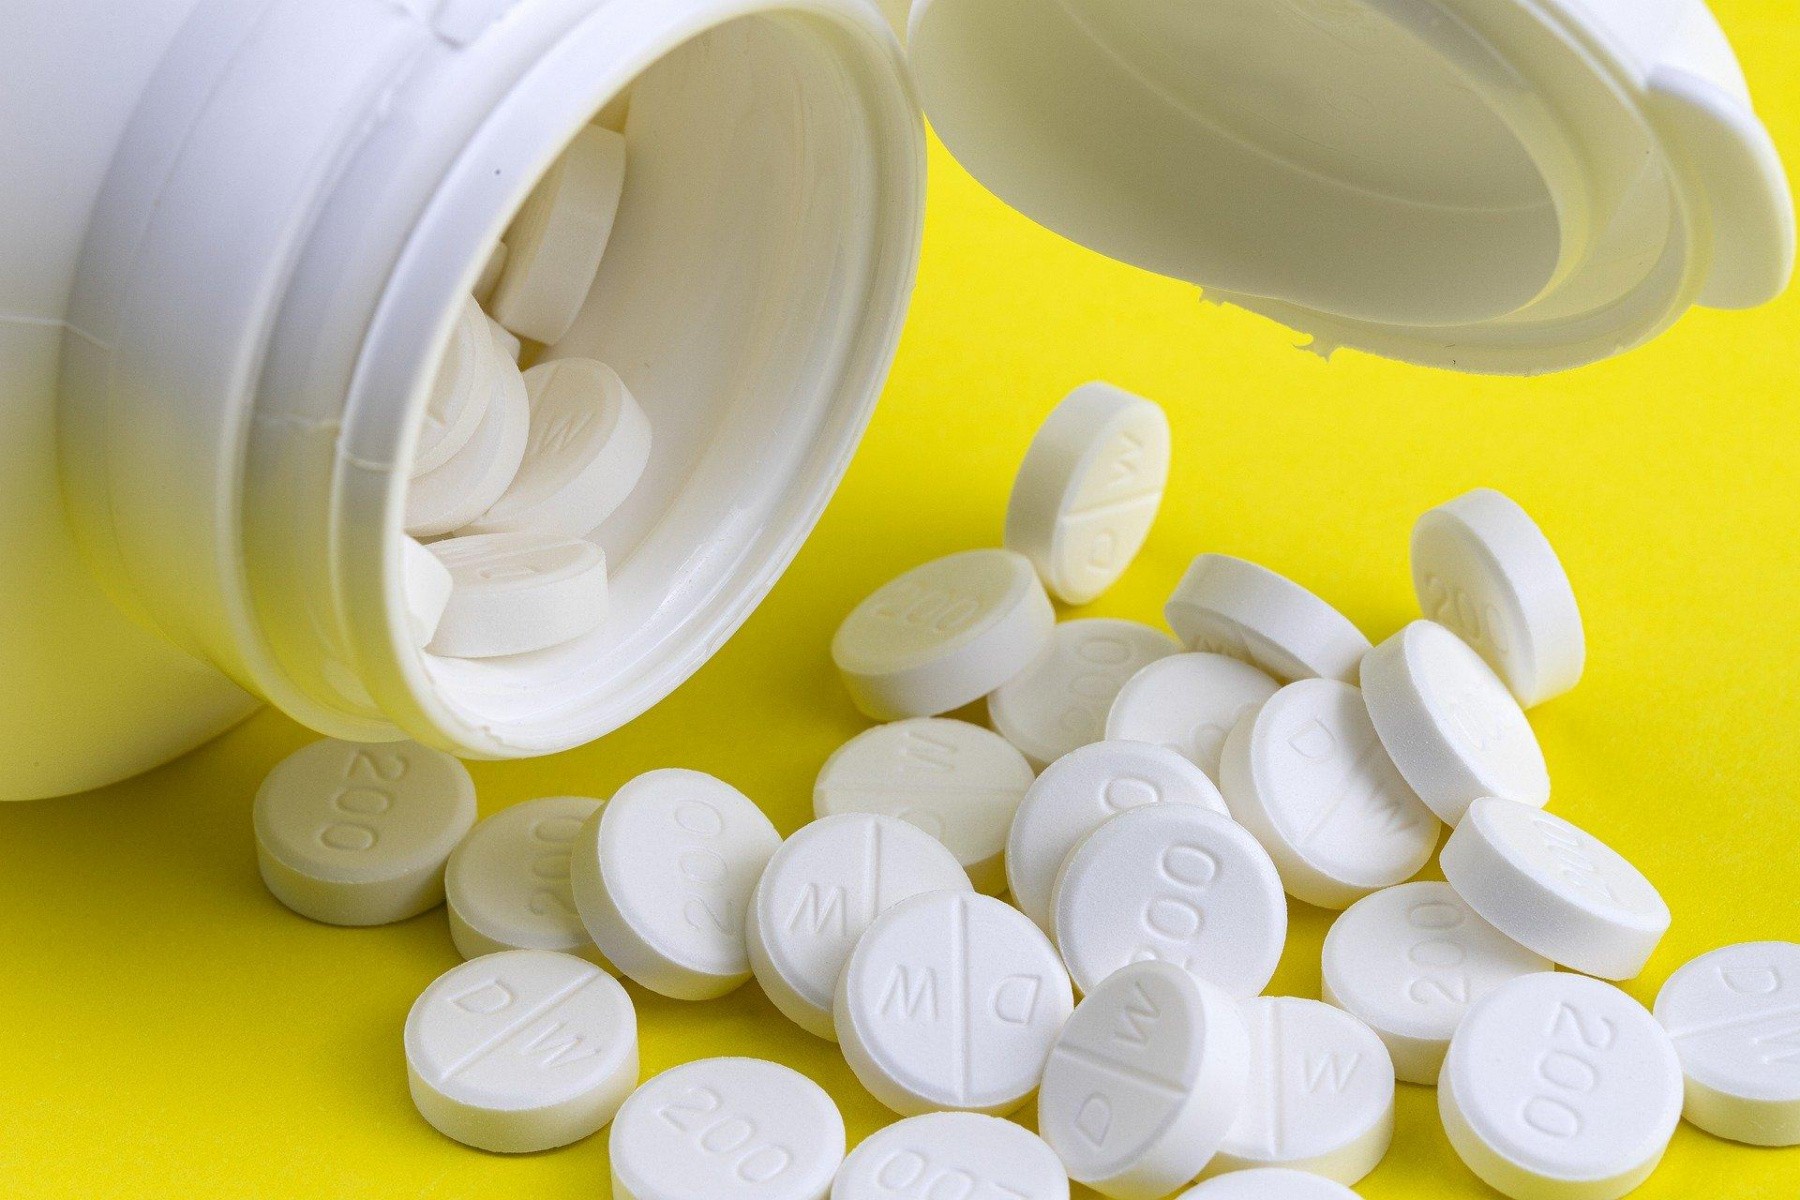 El antidepresivo fluvoxamina salva la vida de pacientes con COVID-19: “arma poderosa contra el virus”